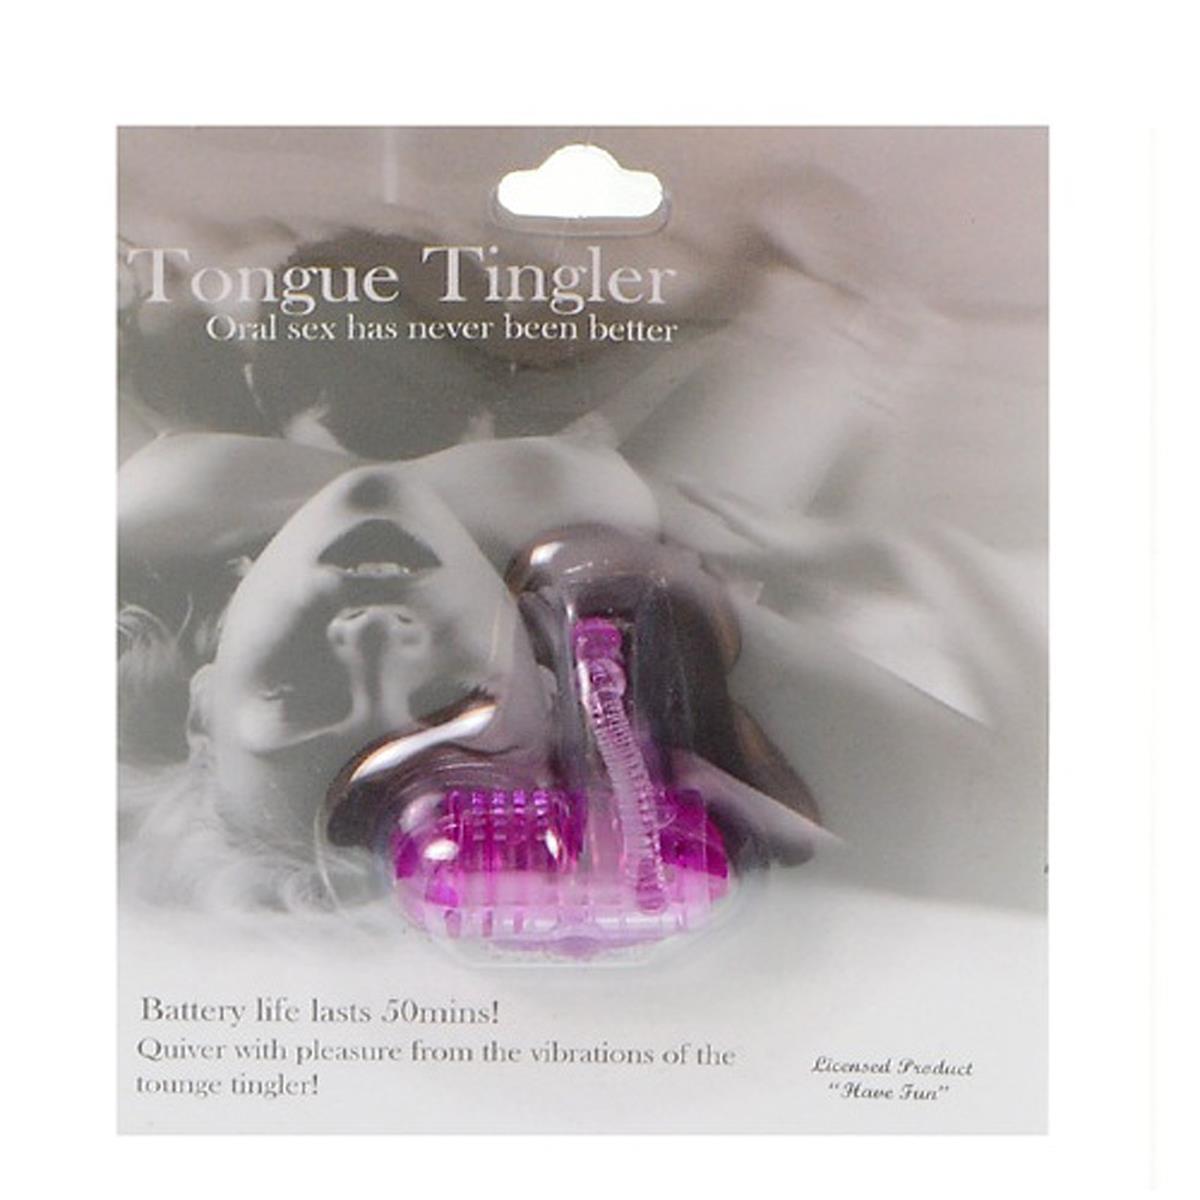 Tongue Tingler K Import & Export